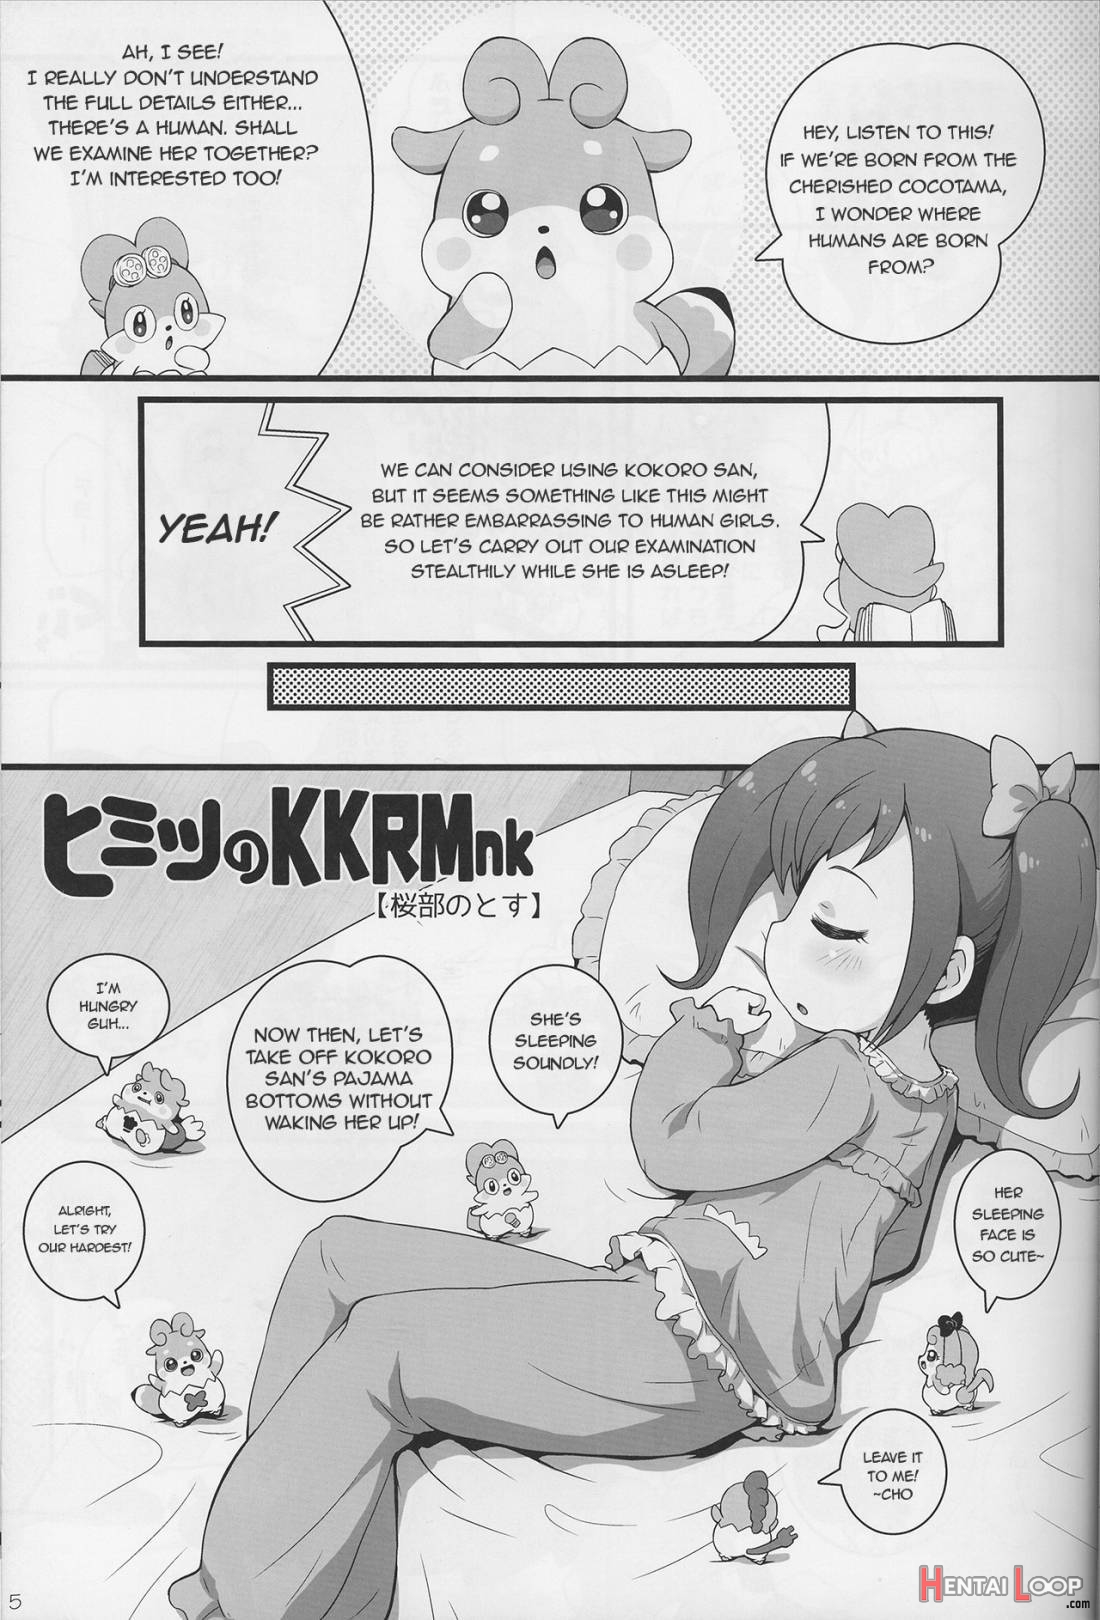 Himitsu no KKRMnk page 3